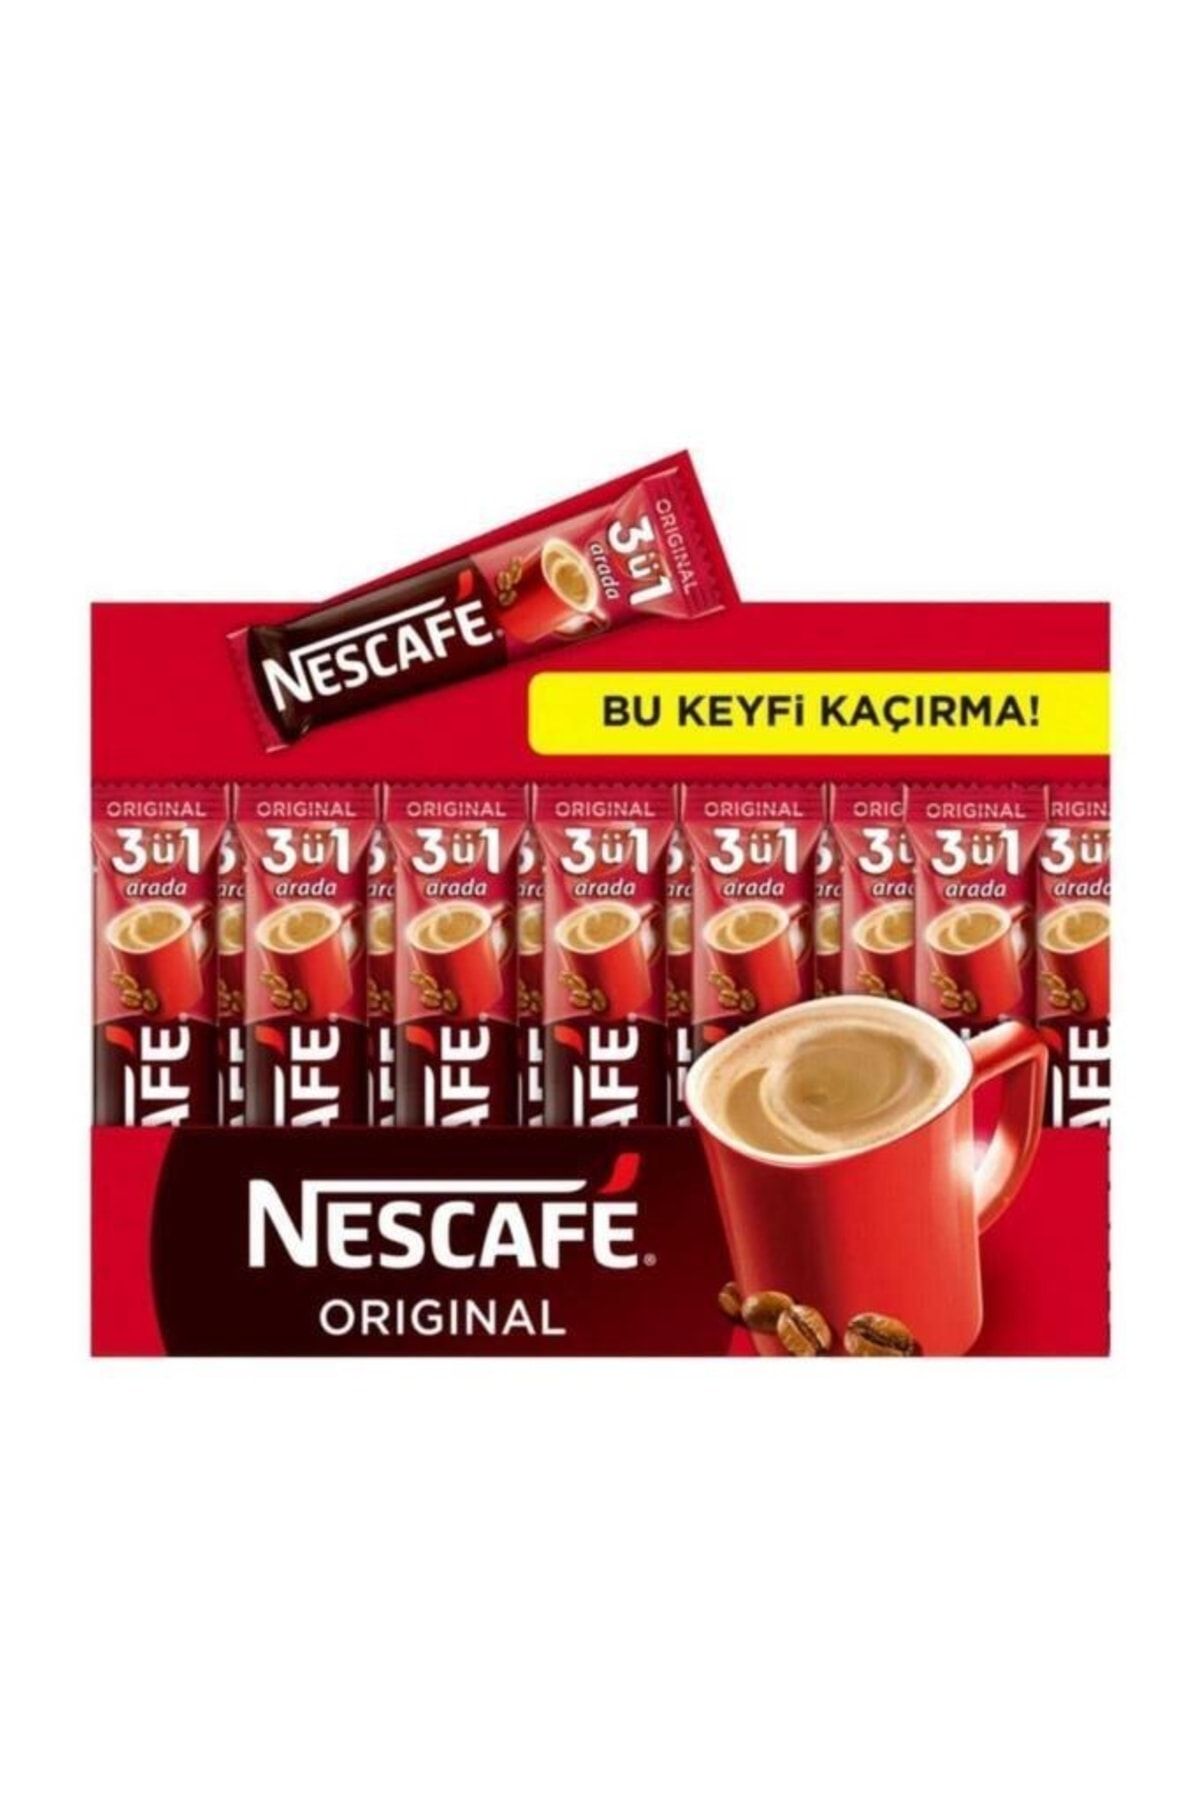 Nestle Nescafe 3u 1 Arada Orijinal X 56 Lı Paket